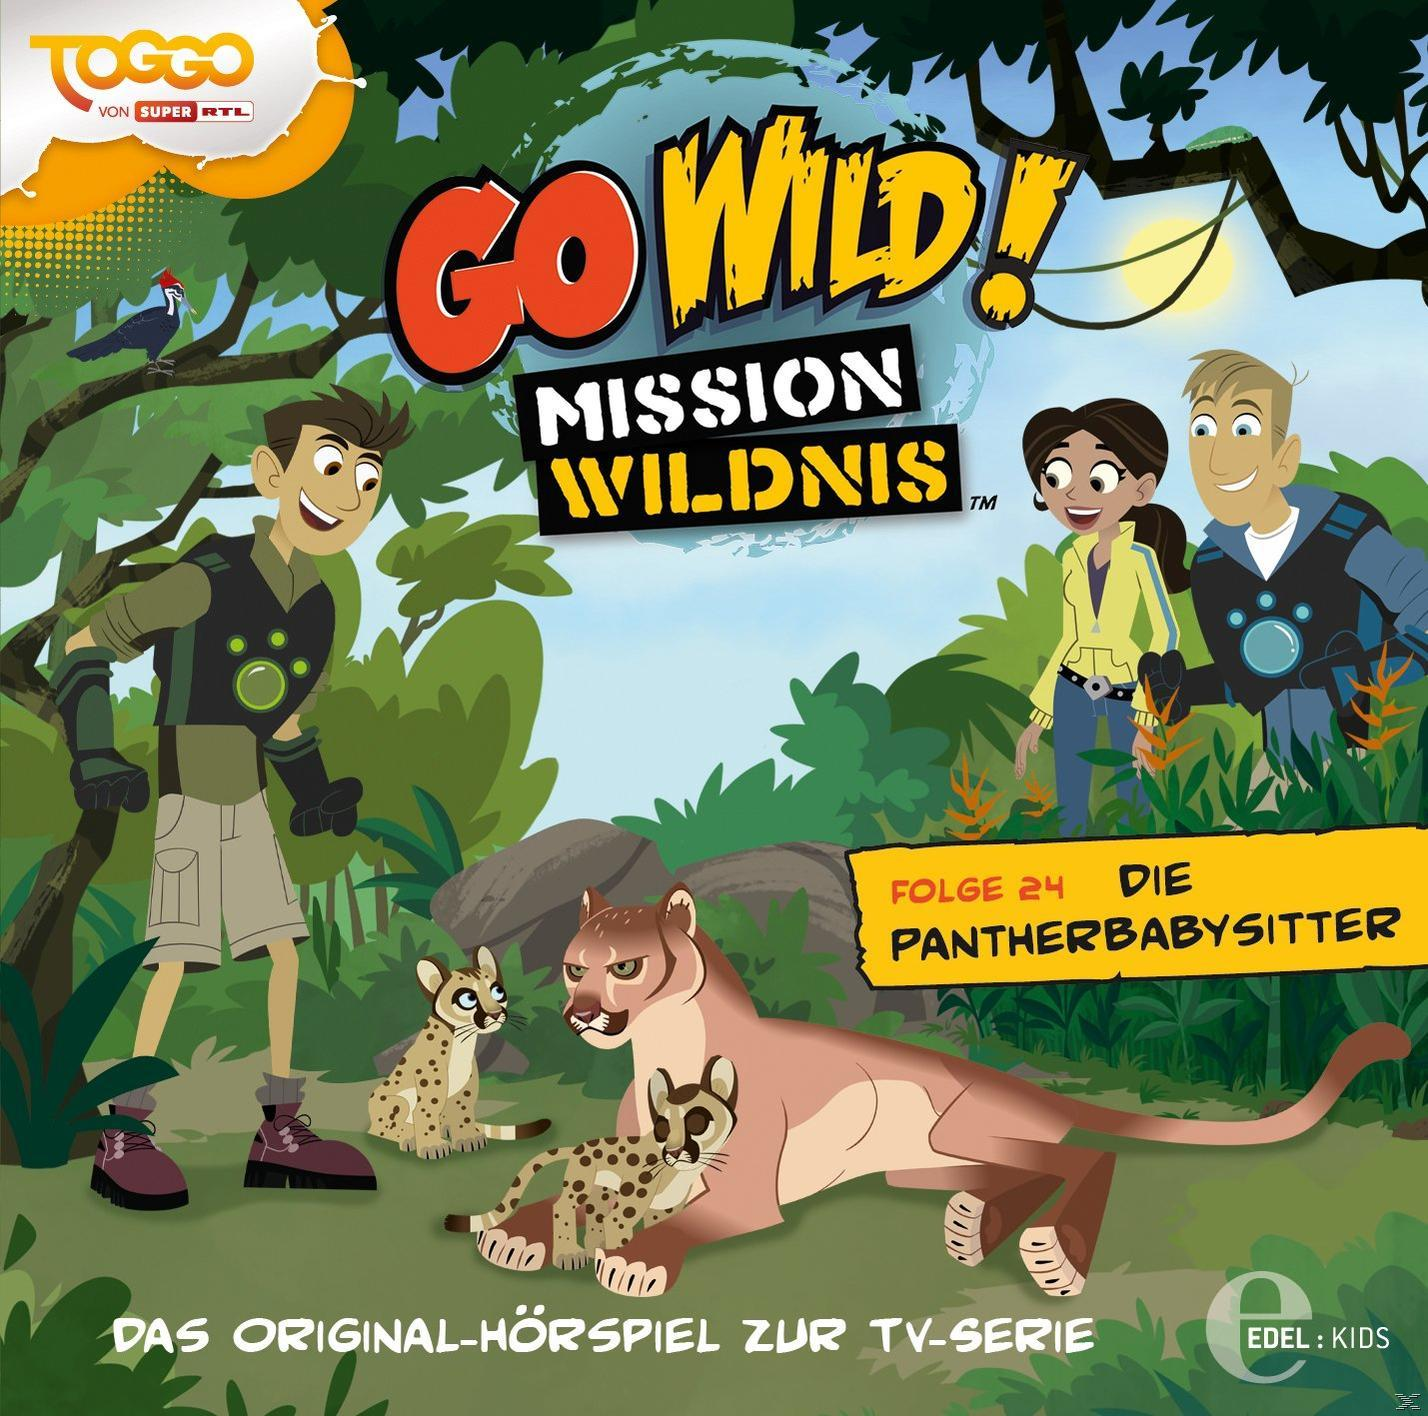 Go Wild!-mission Wildnis (24)Original (CD) HSP z.TV-Serie-Pantherbabysitter - 